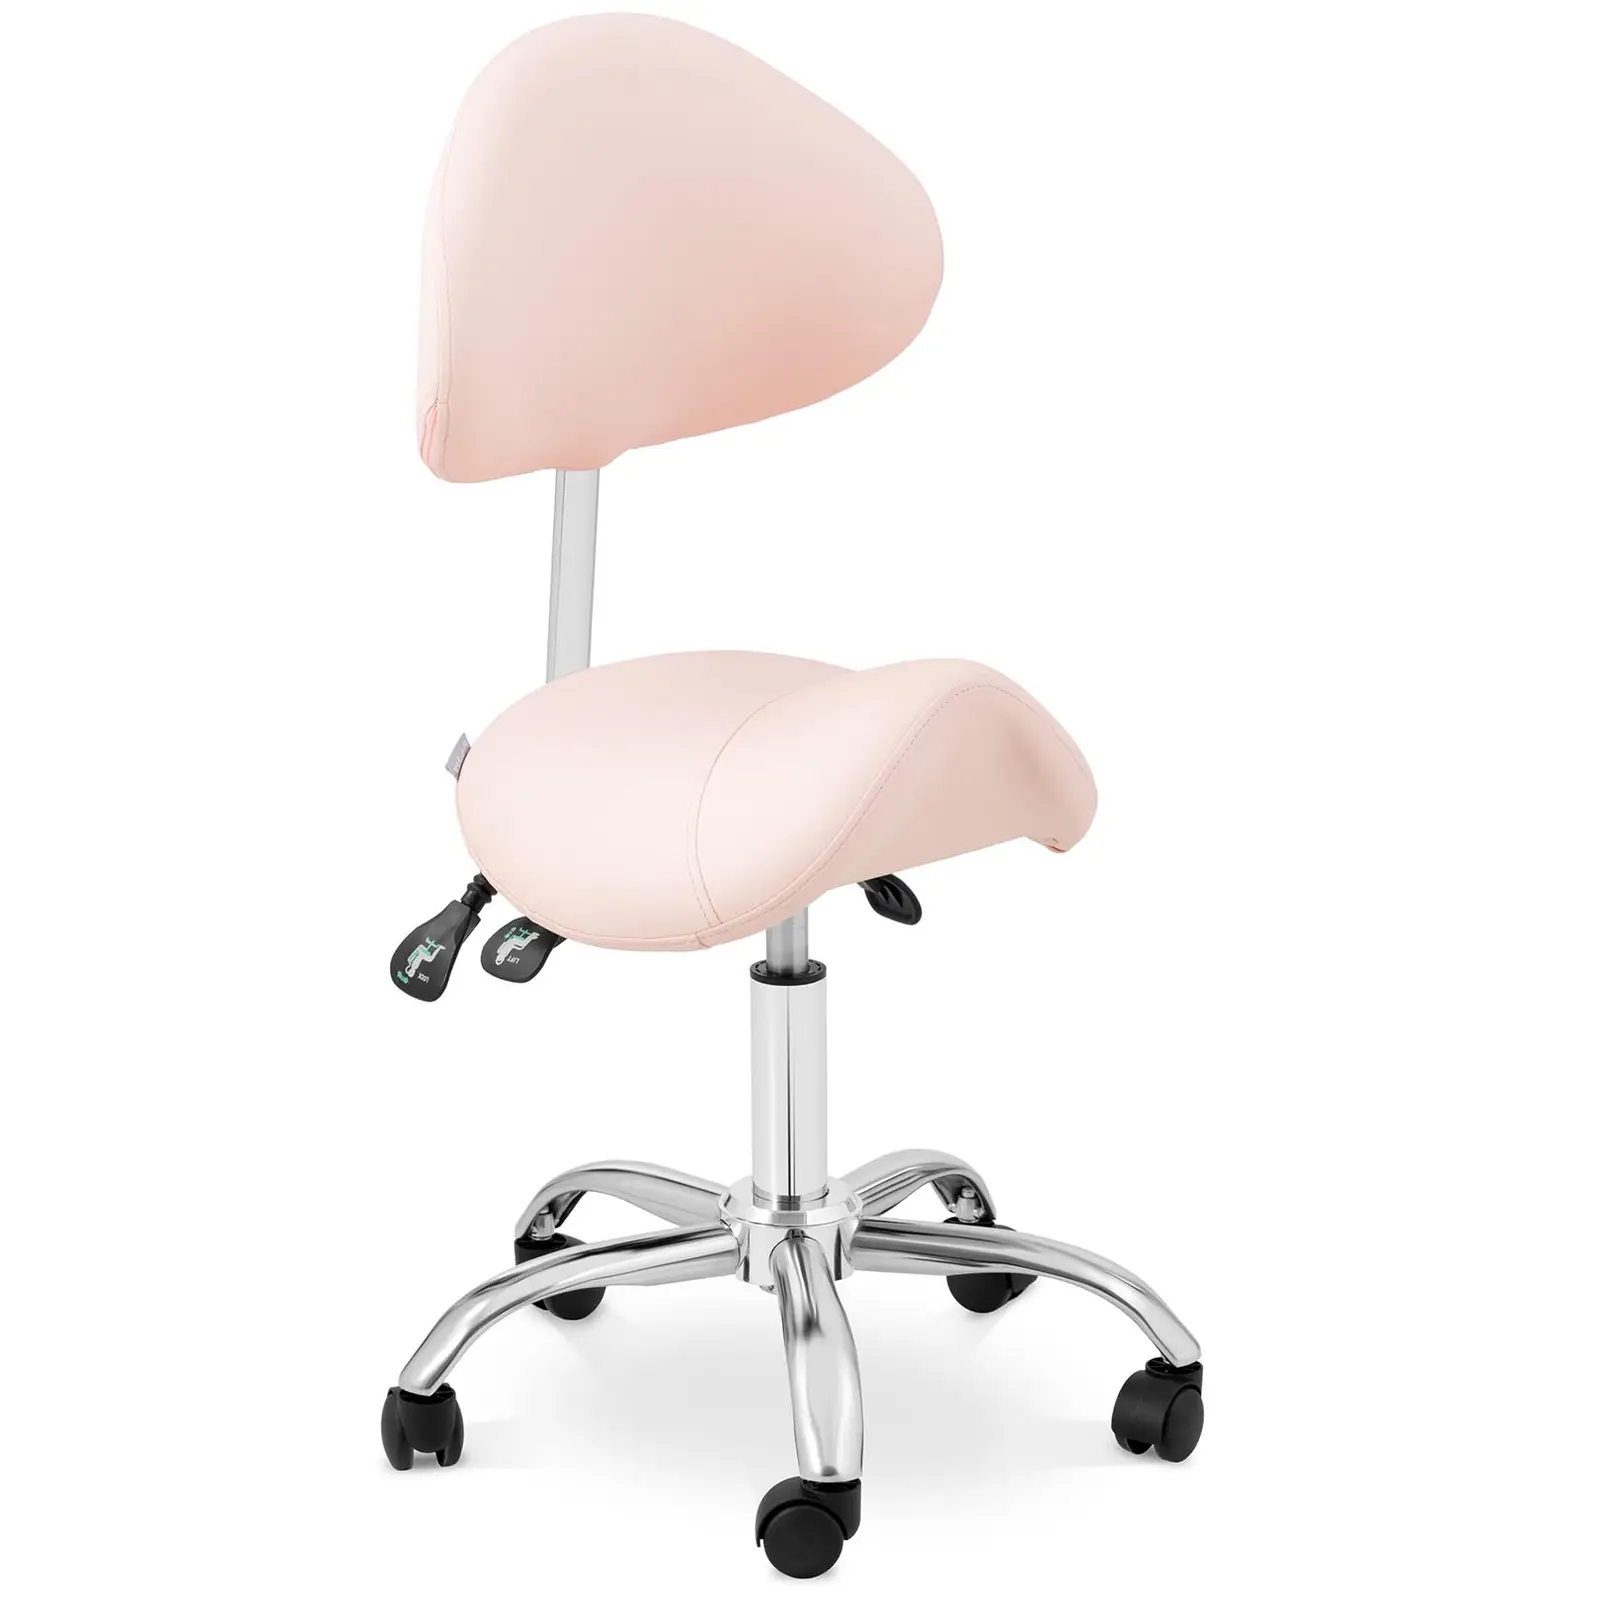 Καρέκλα σέλας - ρυθμιζόμενη καθ' ύψος πλάτη και ύψος καθίσματος - 55 - 69 cm - 150 kg - Pink, Silver